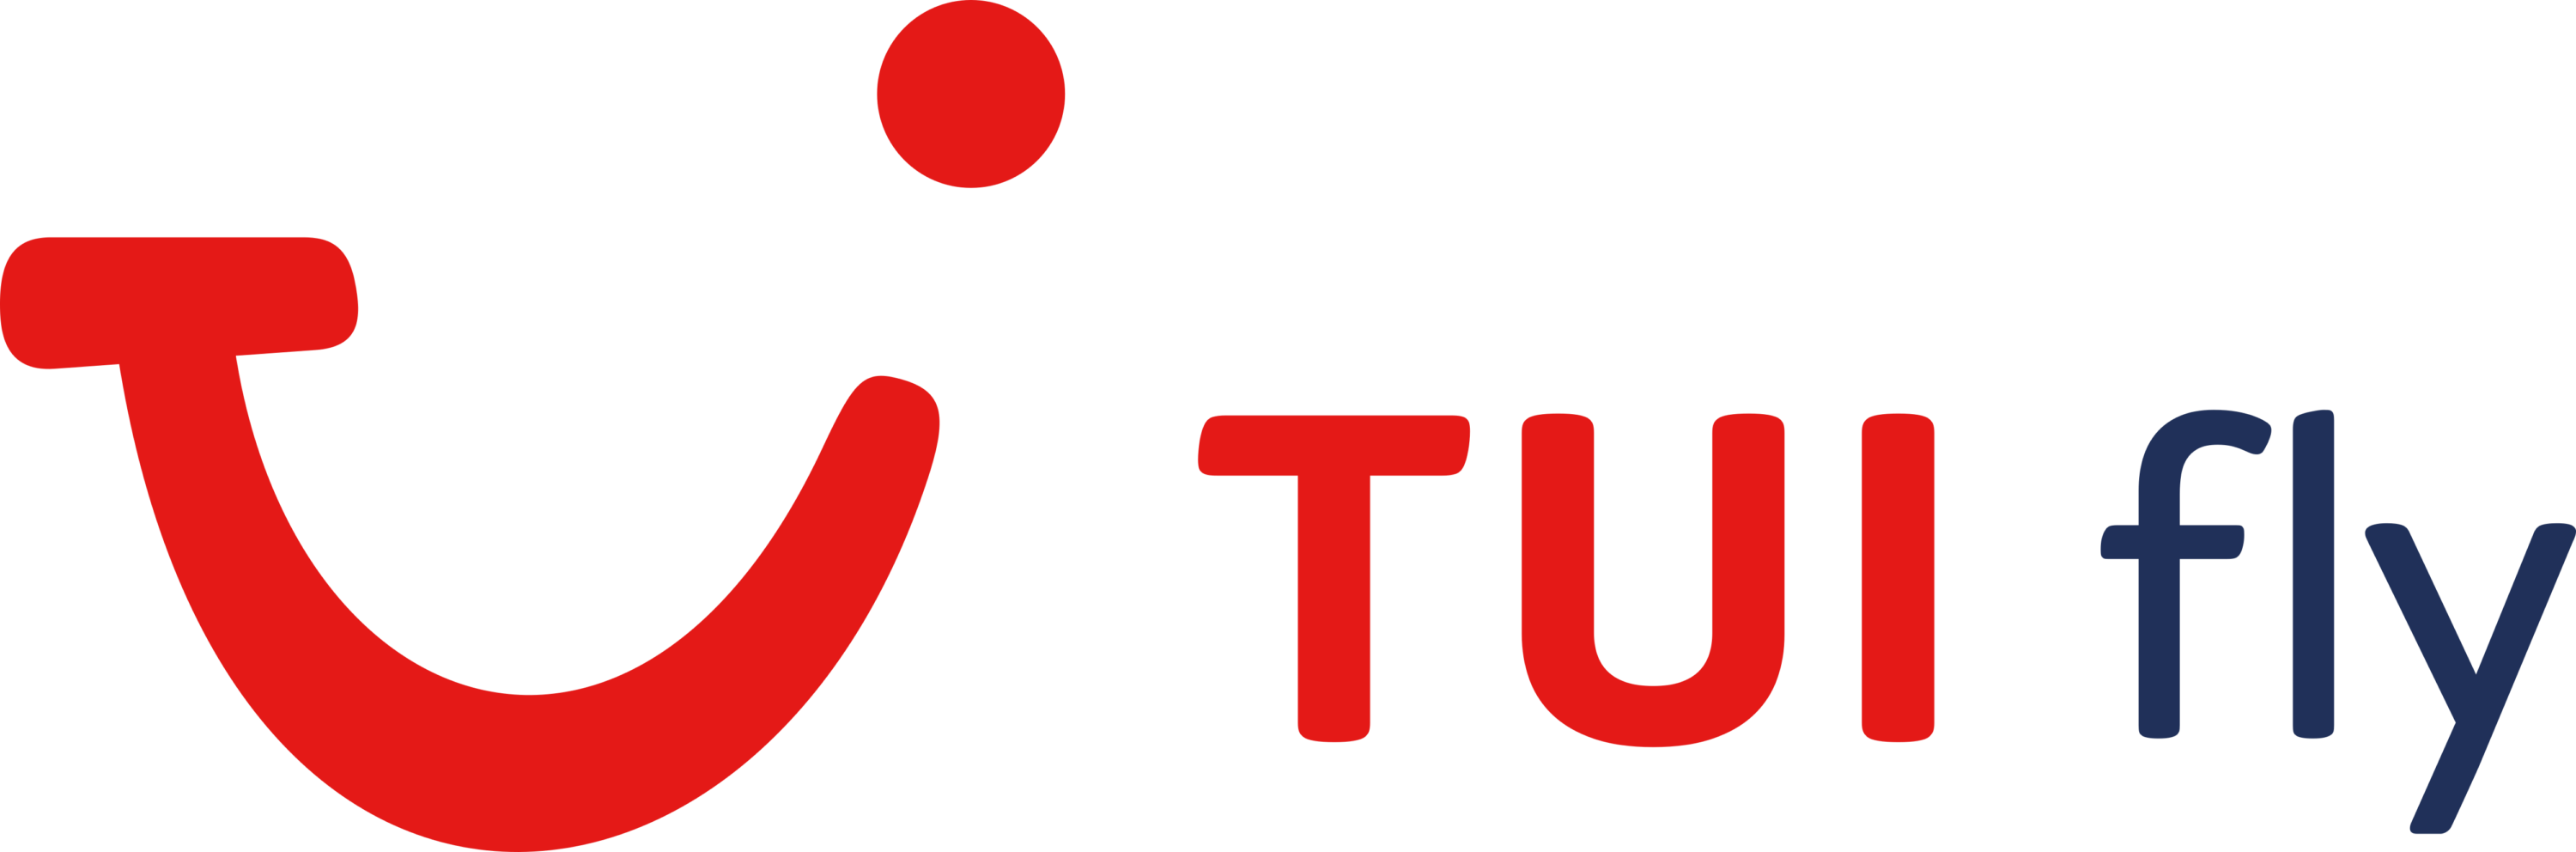 TUI fly Logo